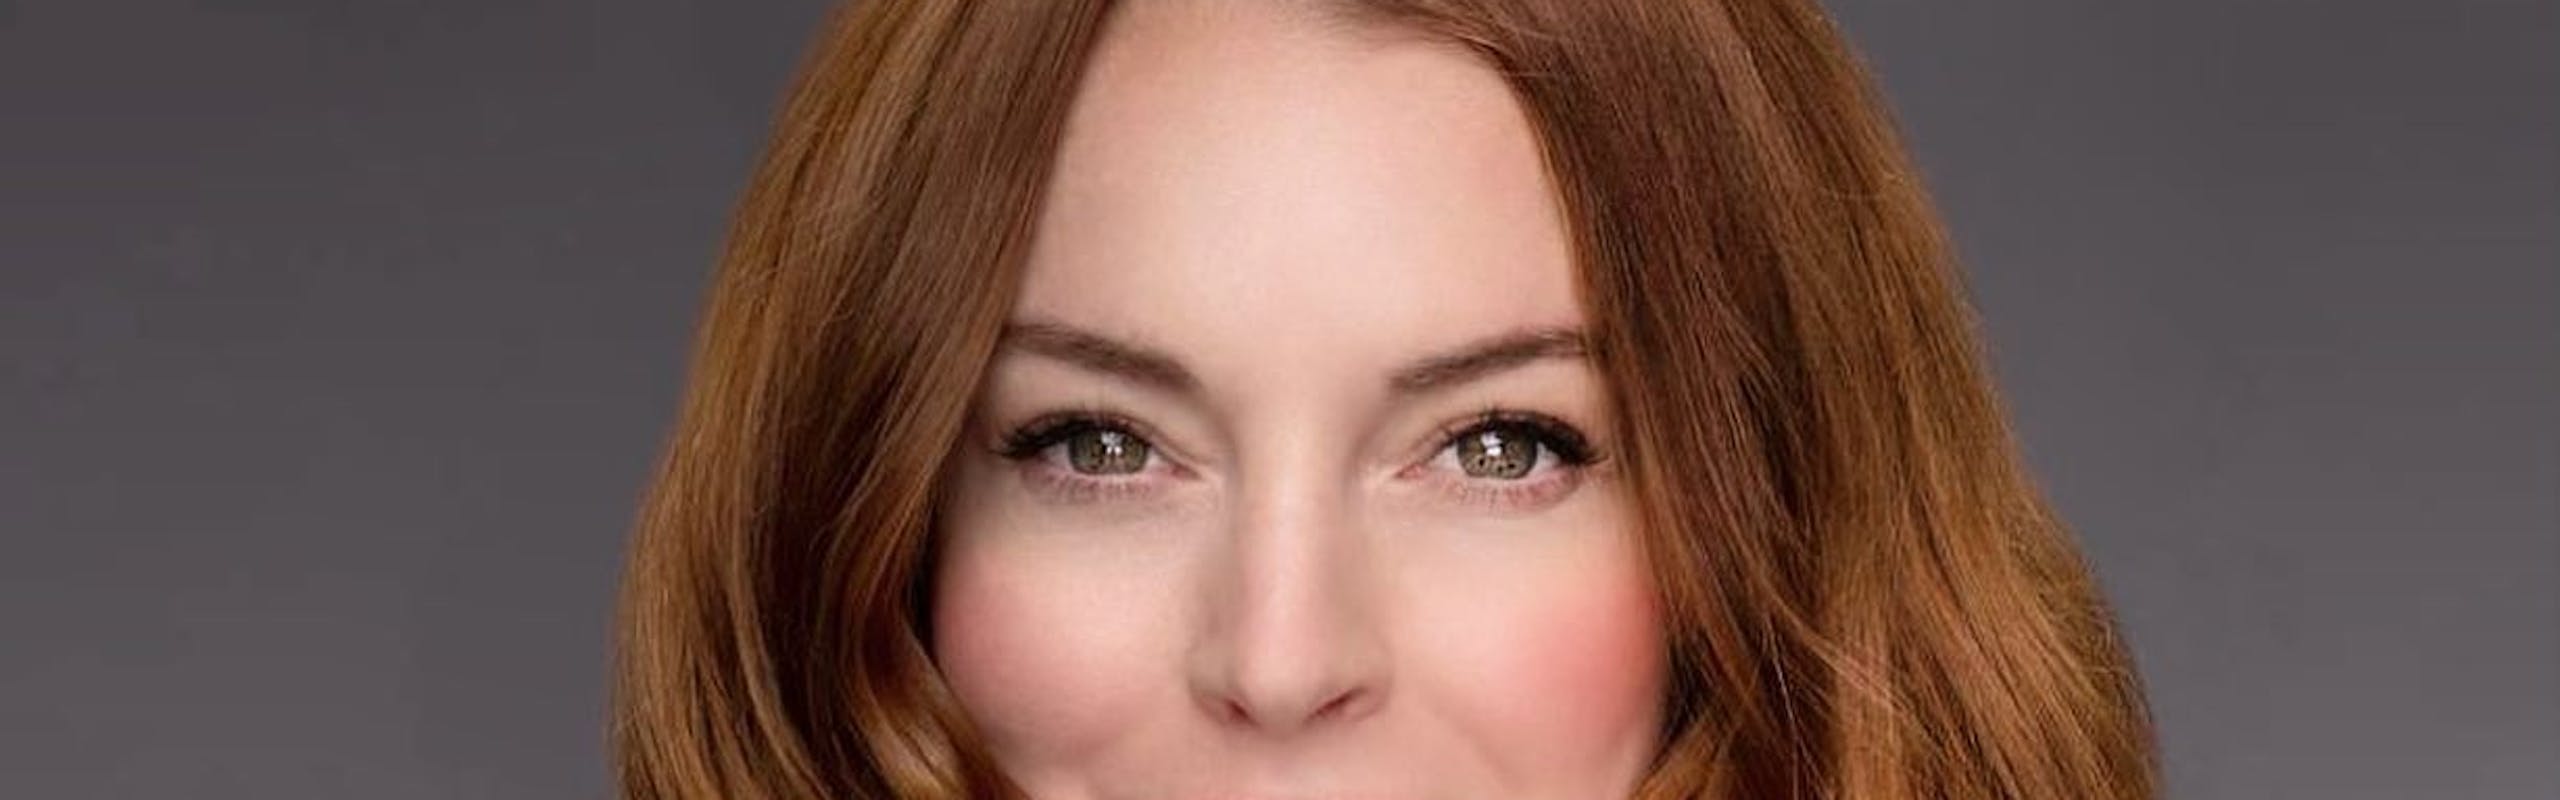 Lindsay Lohan (Foto: reprodução/instagram)